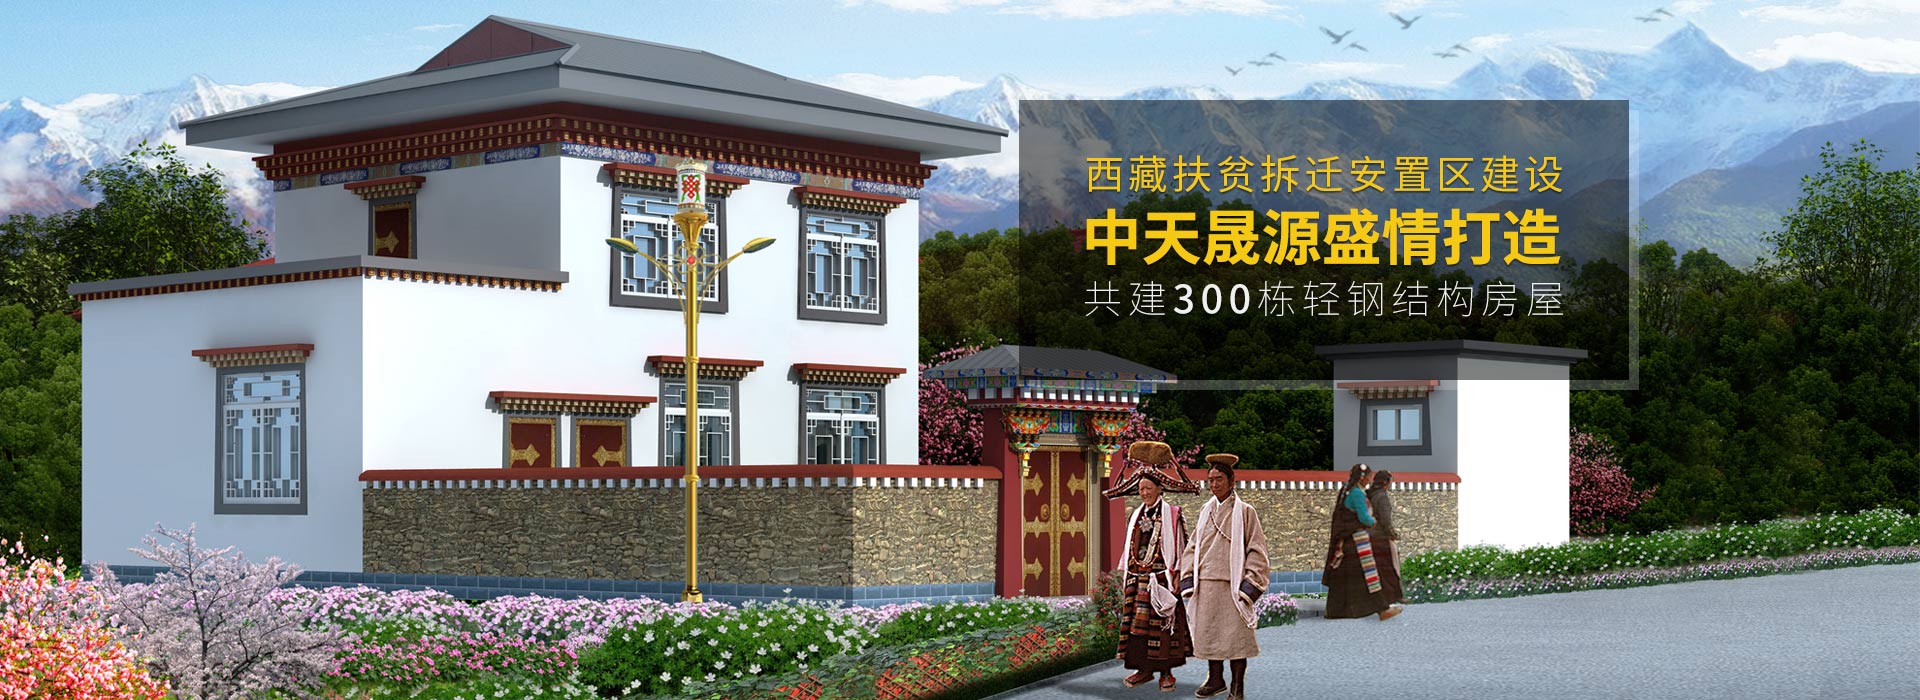 中天晟源盛情打造西藏扶贫拆迁安置区建设轻钢结构房屋